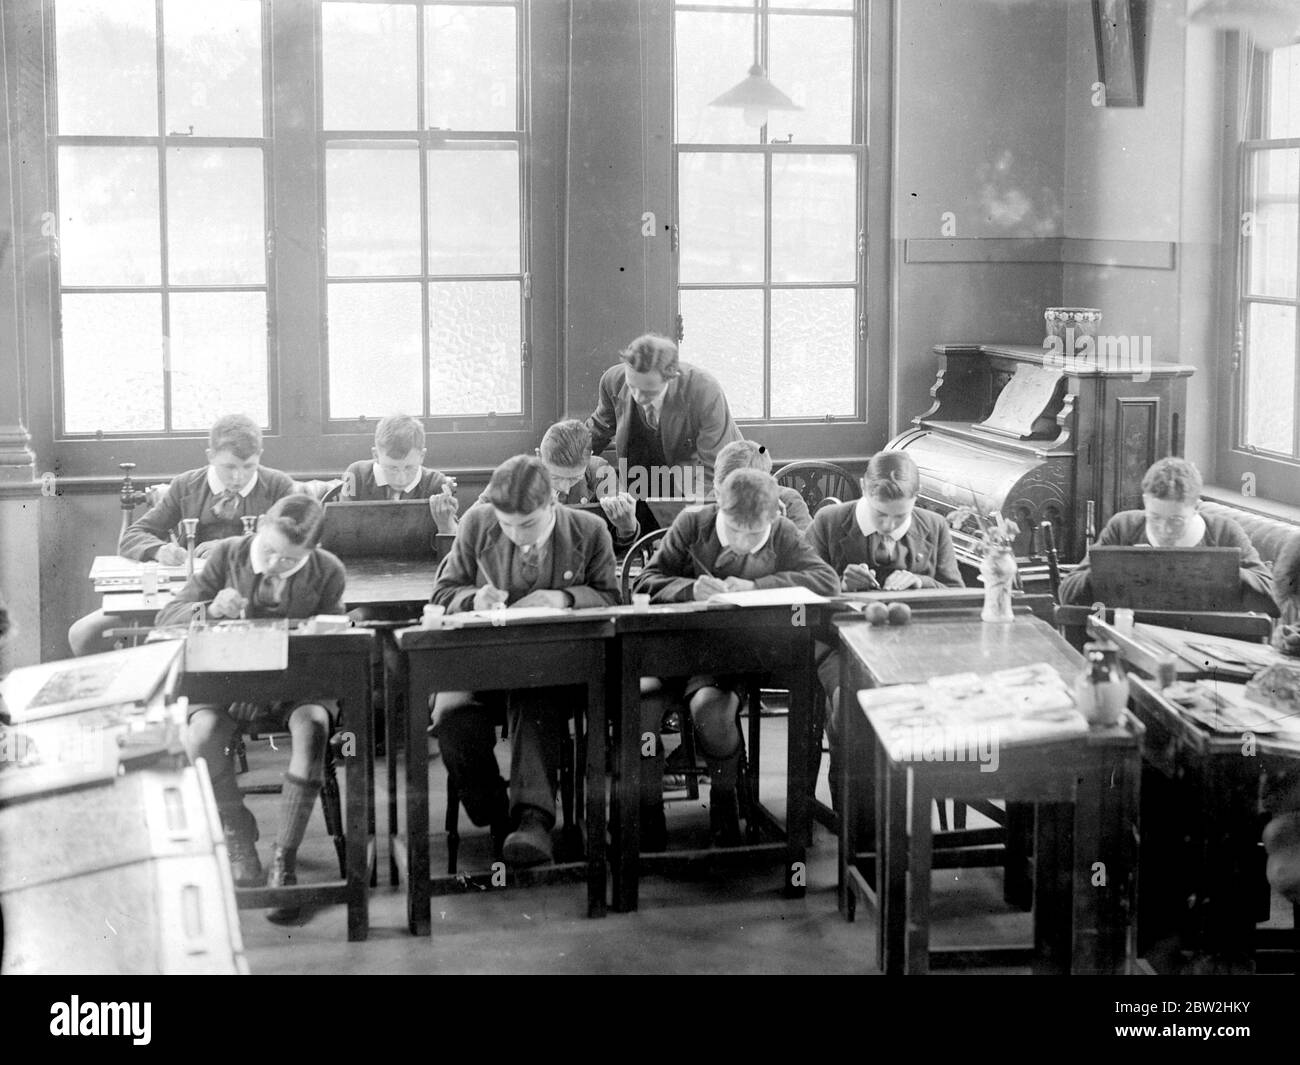 Un enseignant aide les garçons à faire une leçon. 1933 Banque D'Images